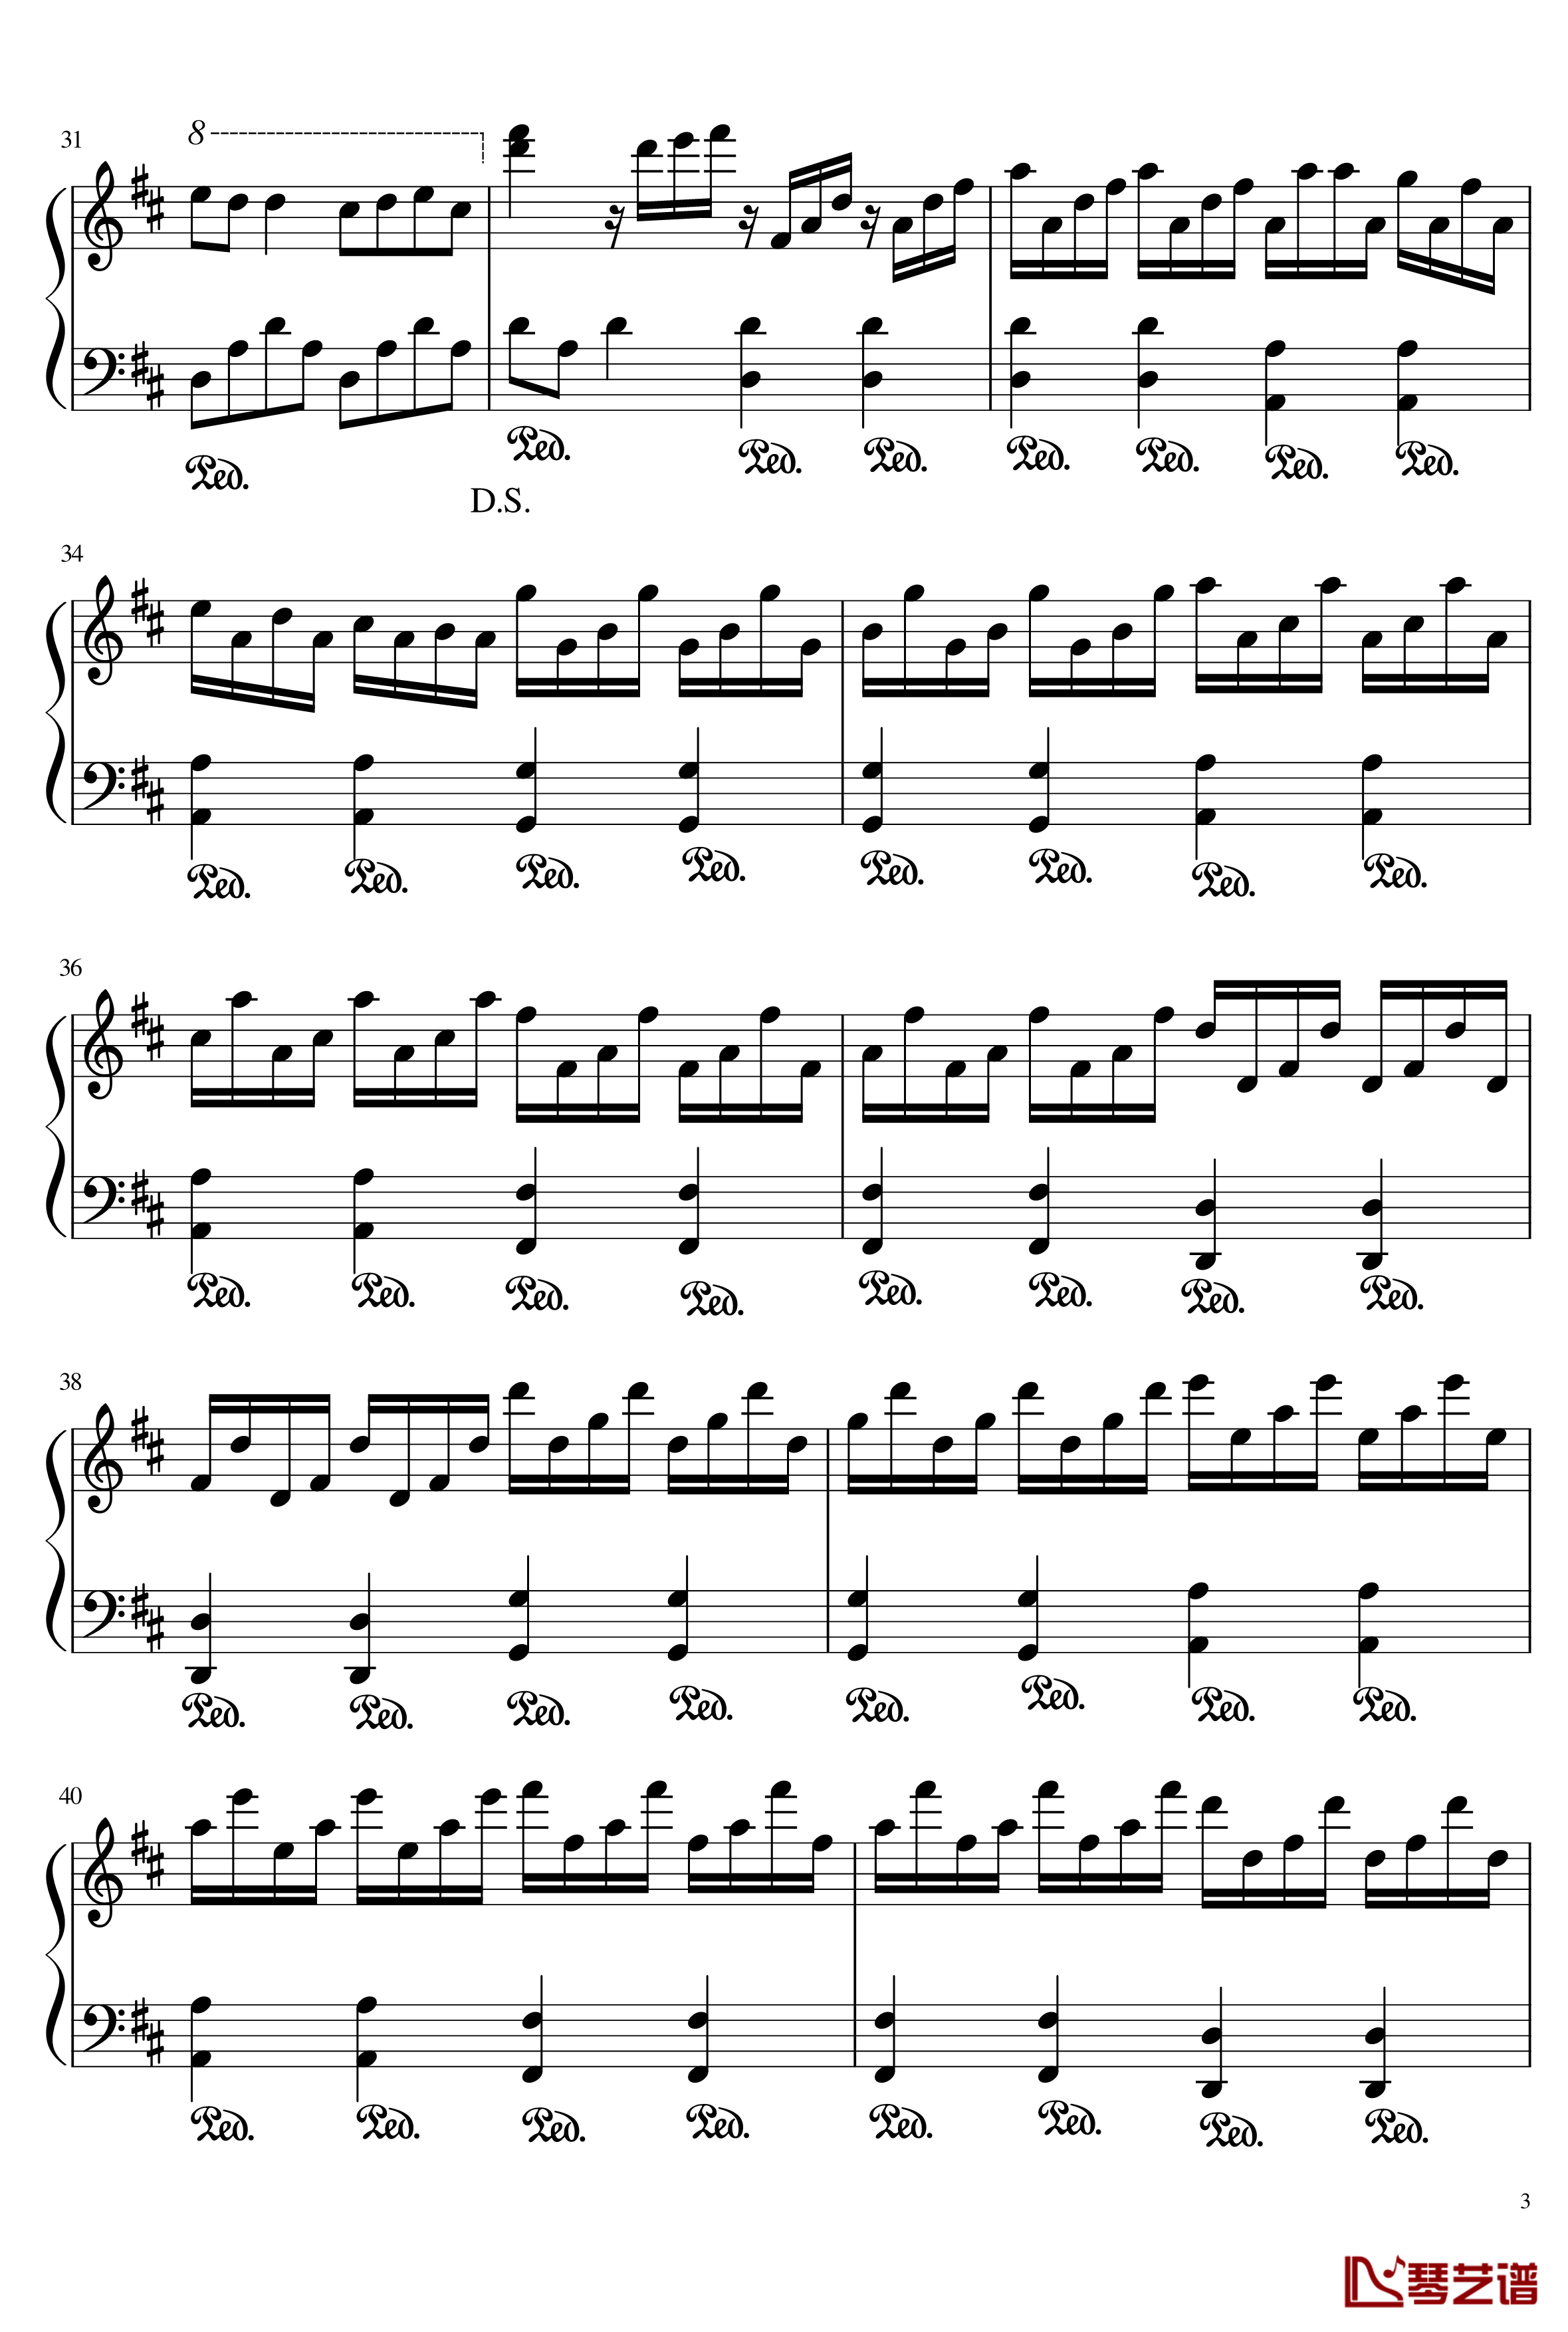 林妙可的旋律钢琴谱-156516370863